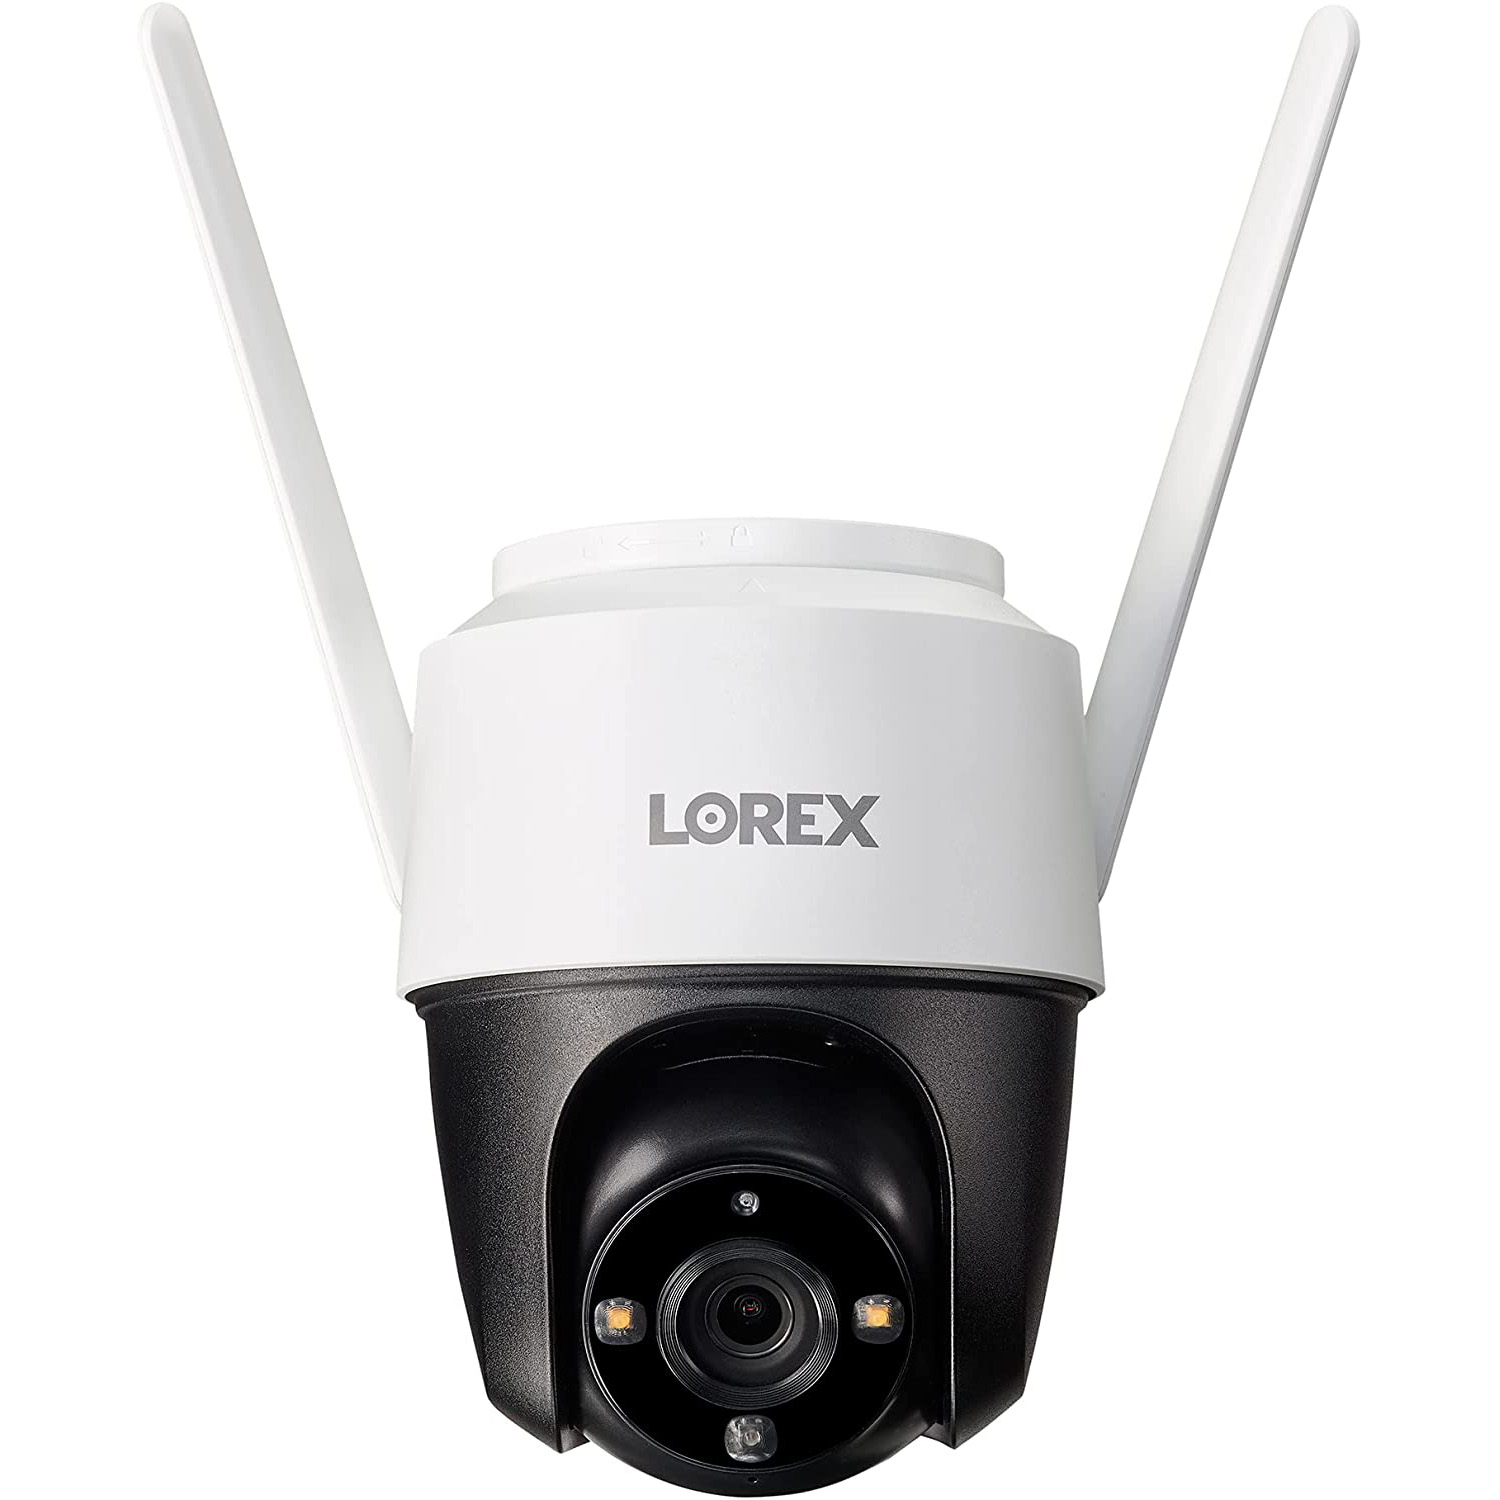 Photos - Surveillance Camera Lorex 2K Pan-Tilt Outdoor Wi-Fi Security Camera with Color Night Vision F4 